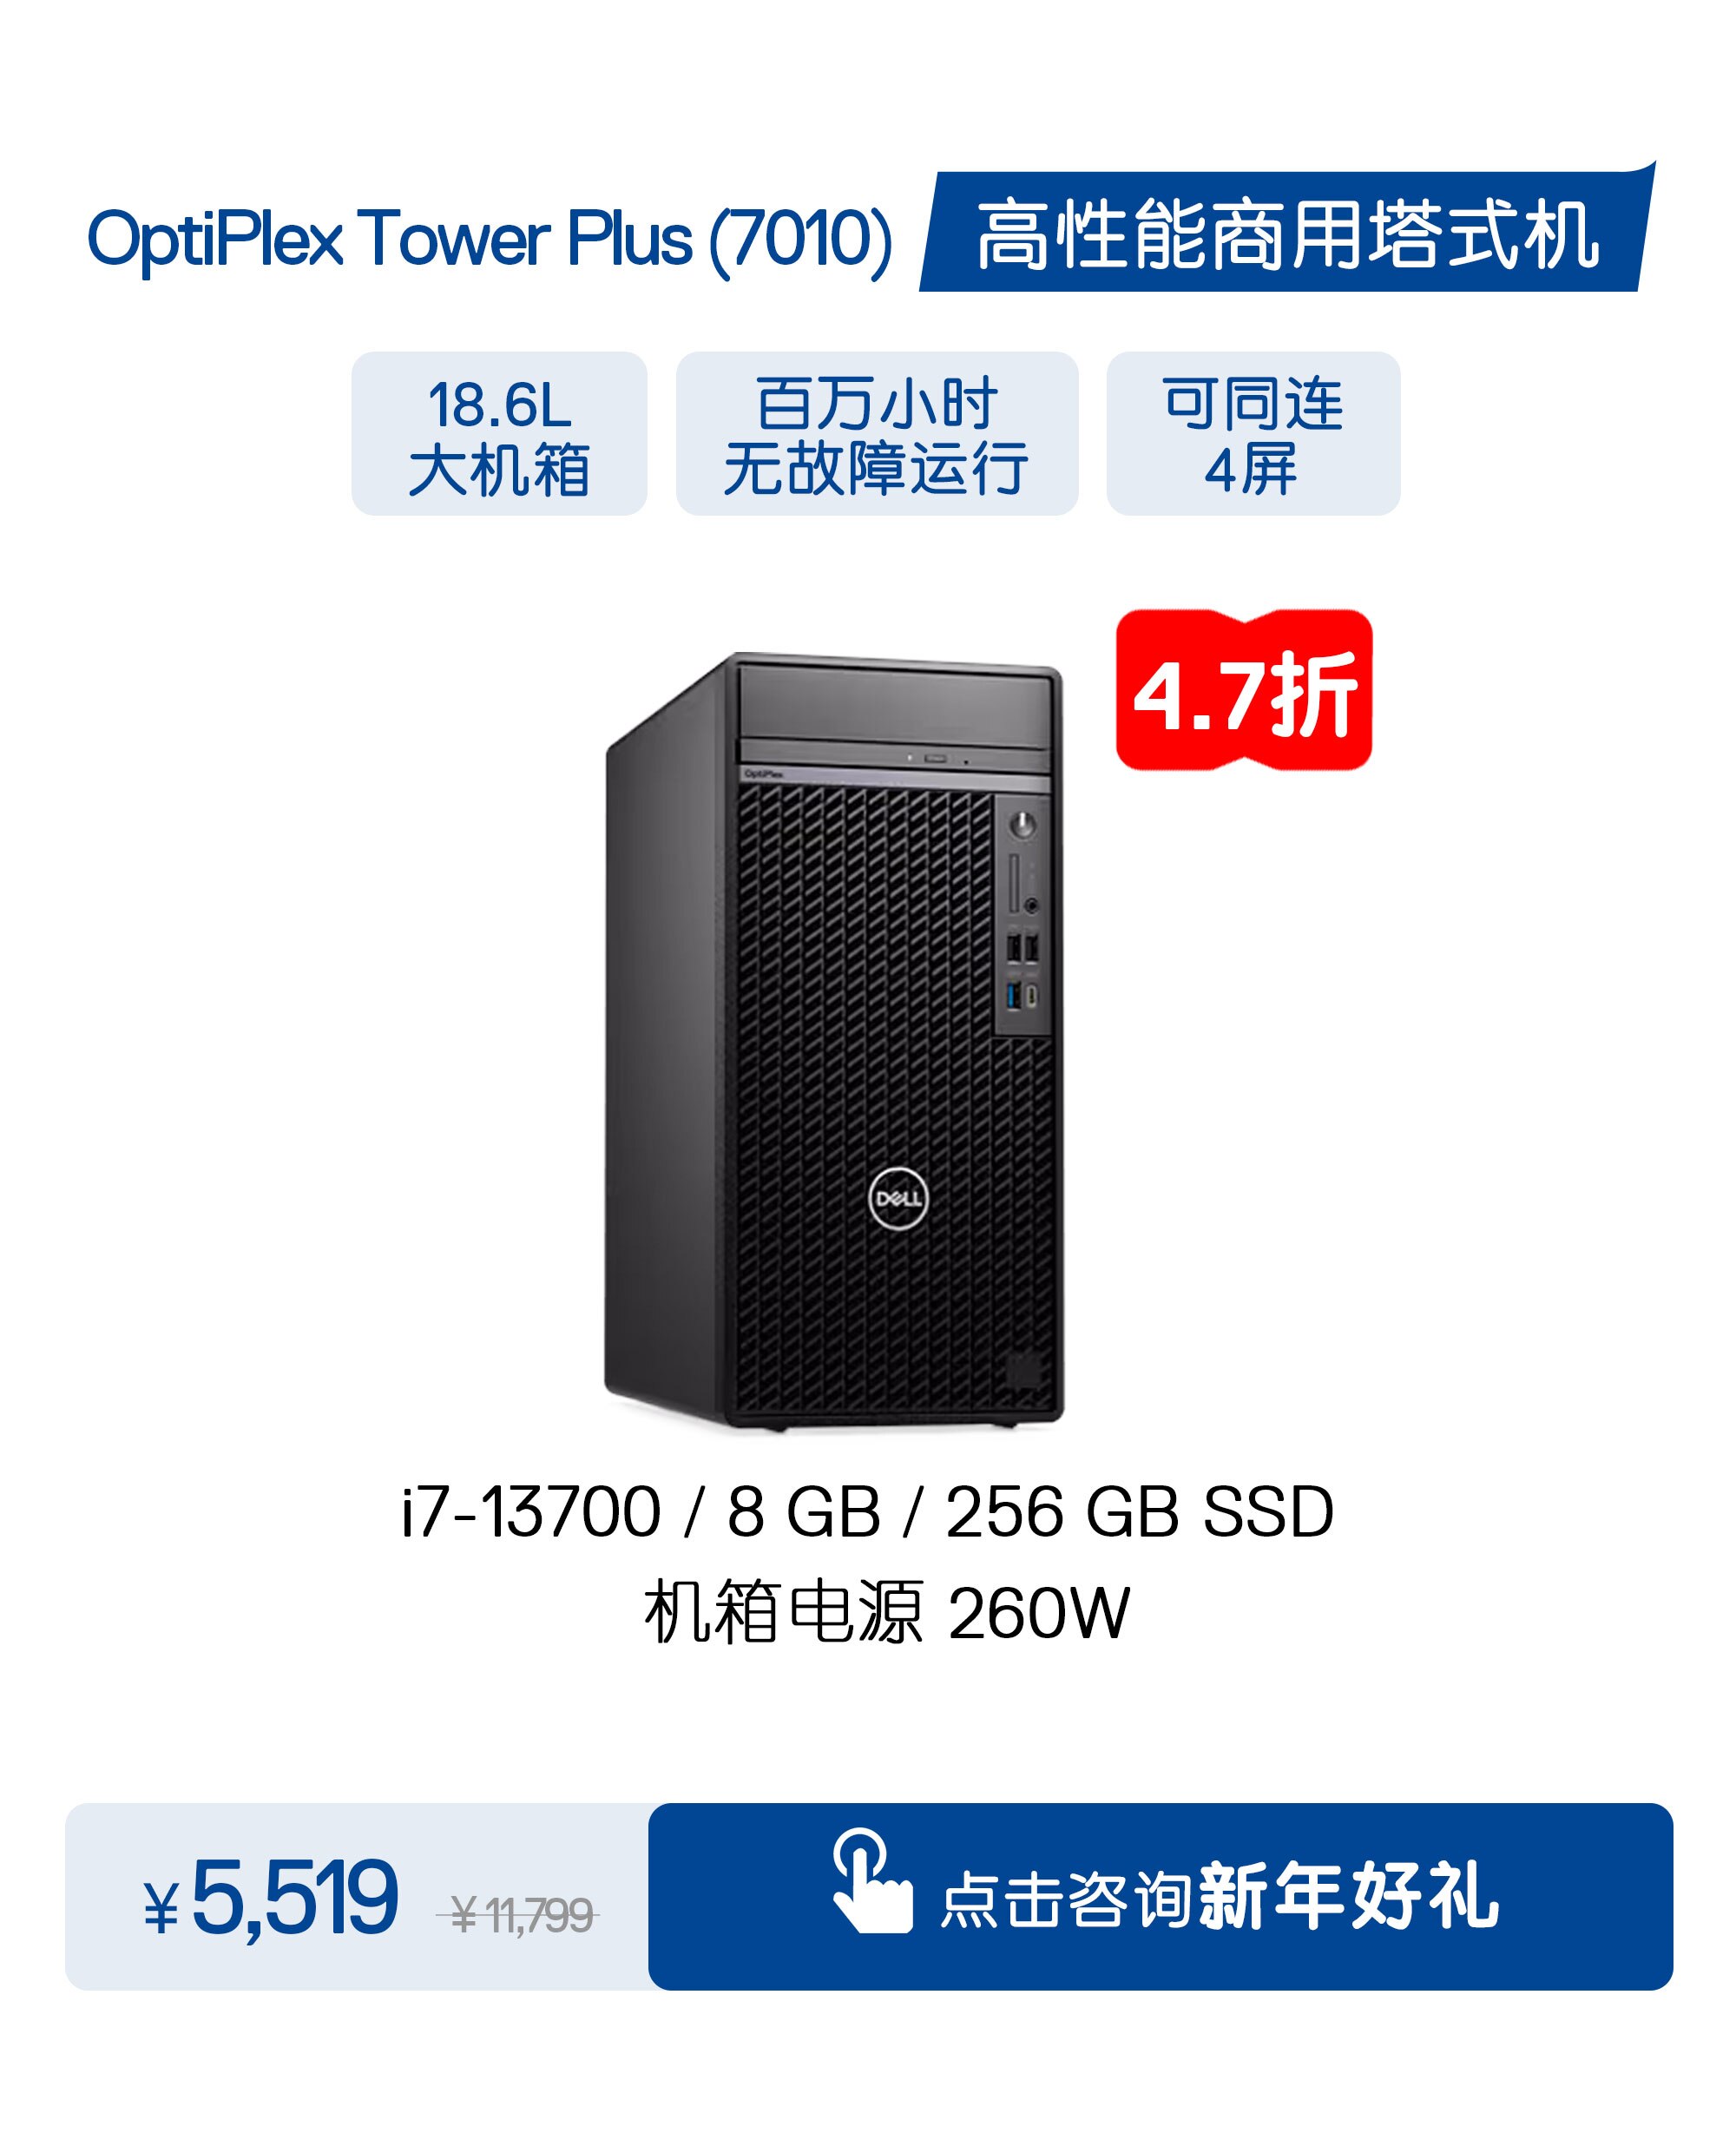 Optiplex Tower Plus 7010